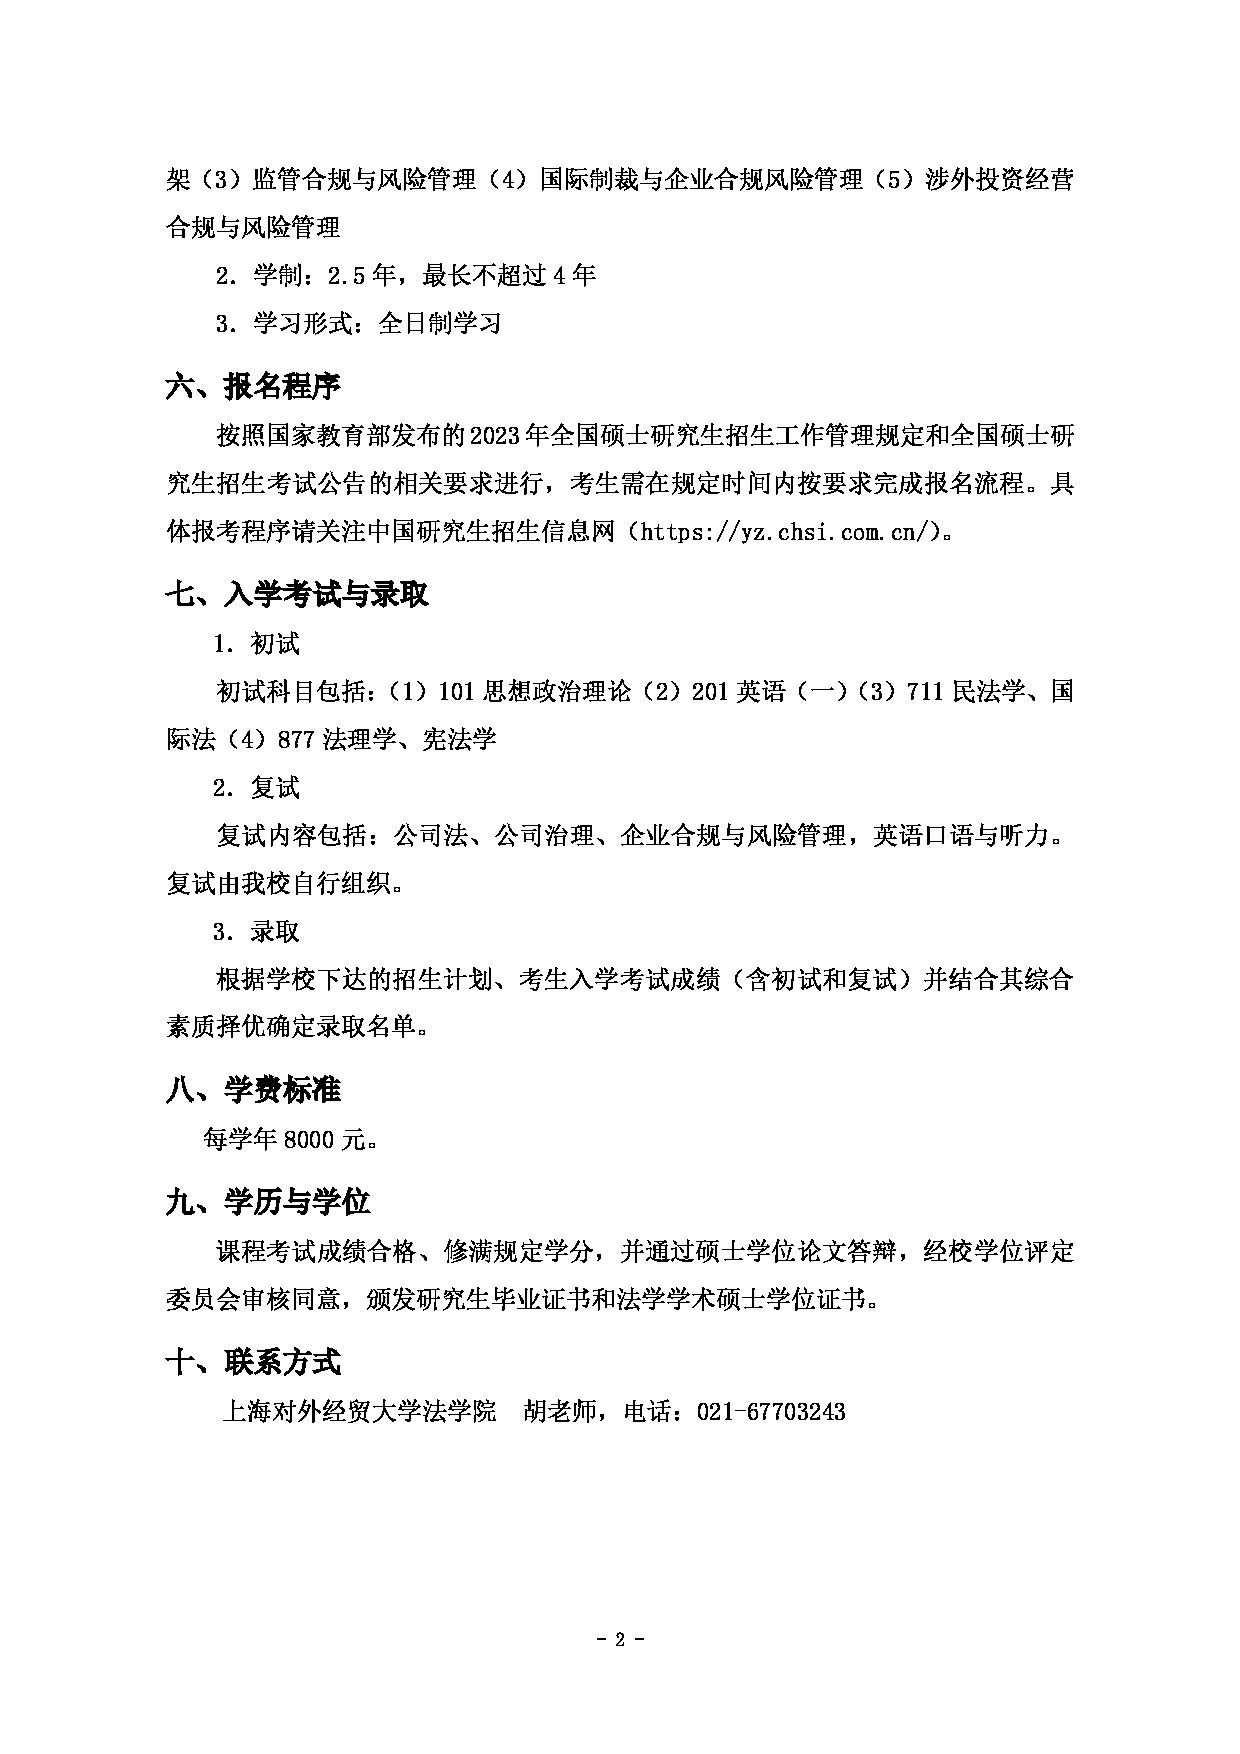 2023招生简章：上海对外经贸大学2023年企业合规与风险管理学术学位硕士研究生招生简章第2页